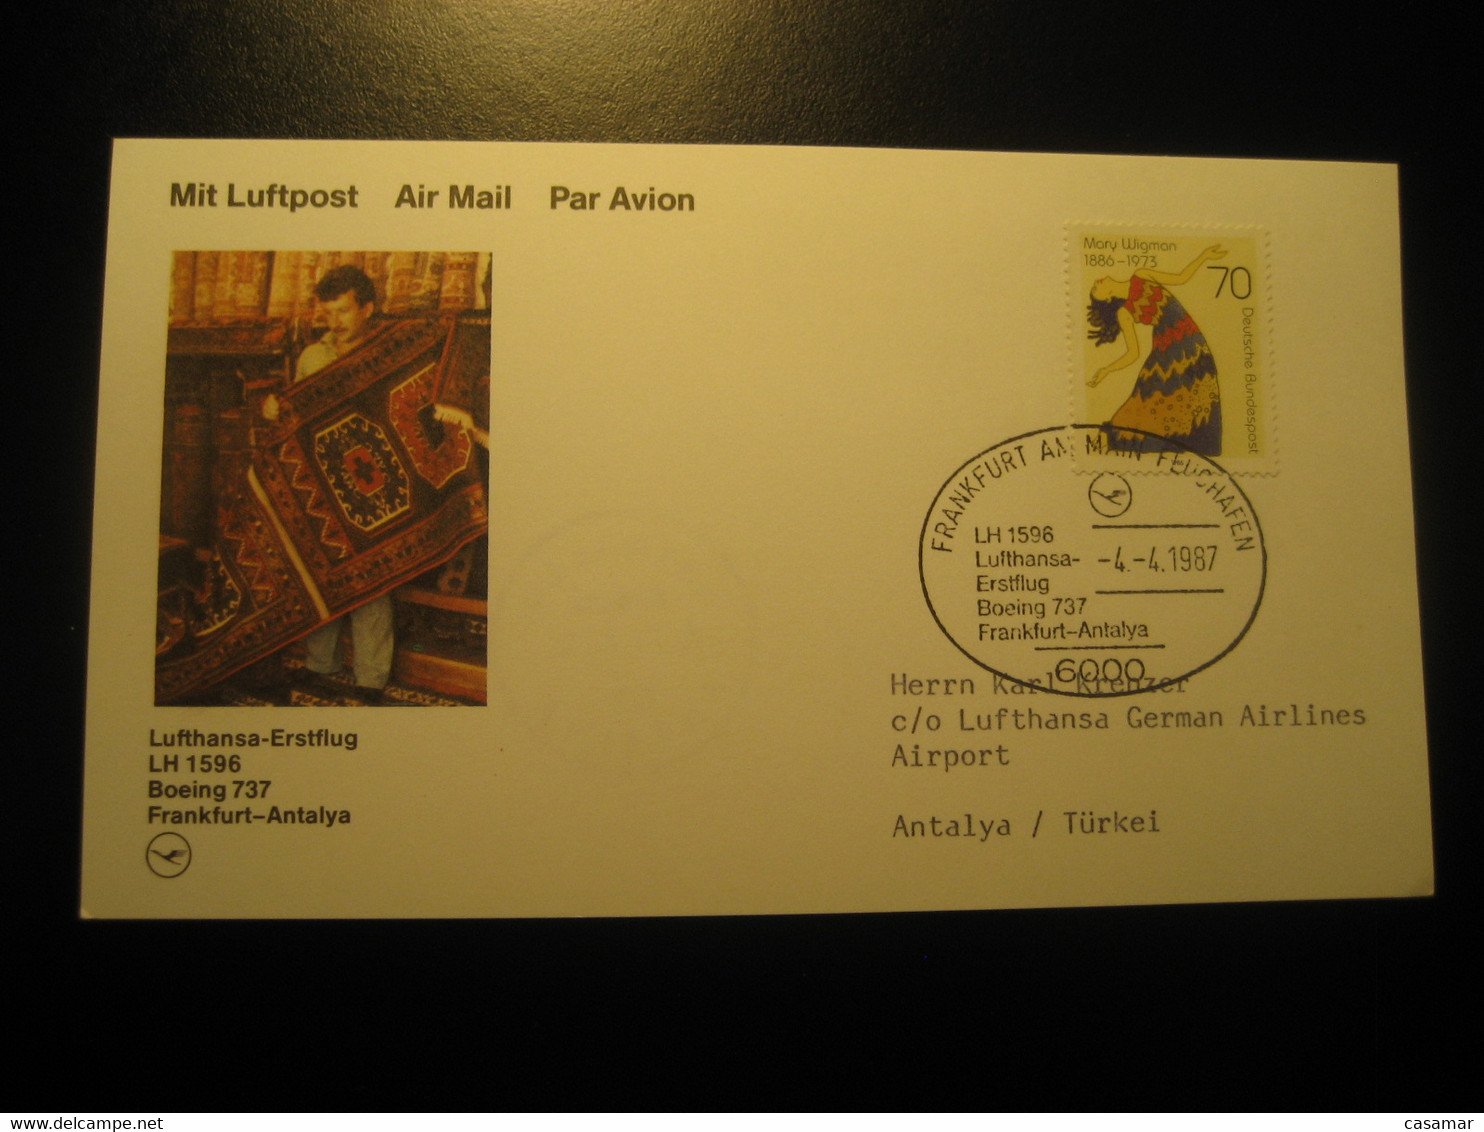 Frankfurt Antalya 1987 Lufthansa Airline Boeing 737 First Flight Stamp Cancel Card Turkey Germany - Luchtpost